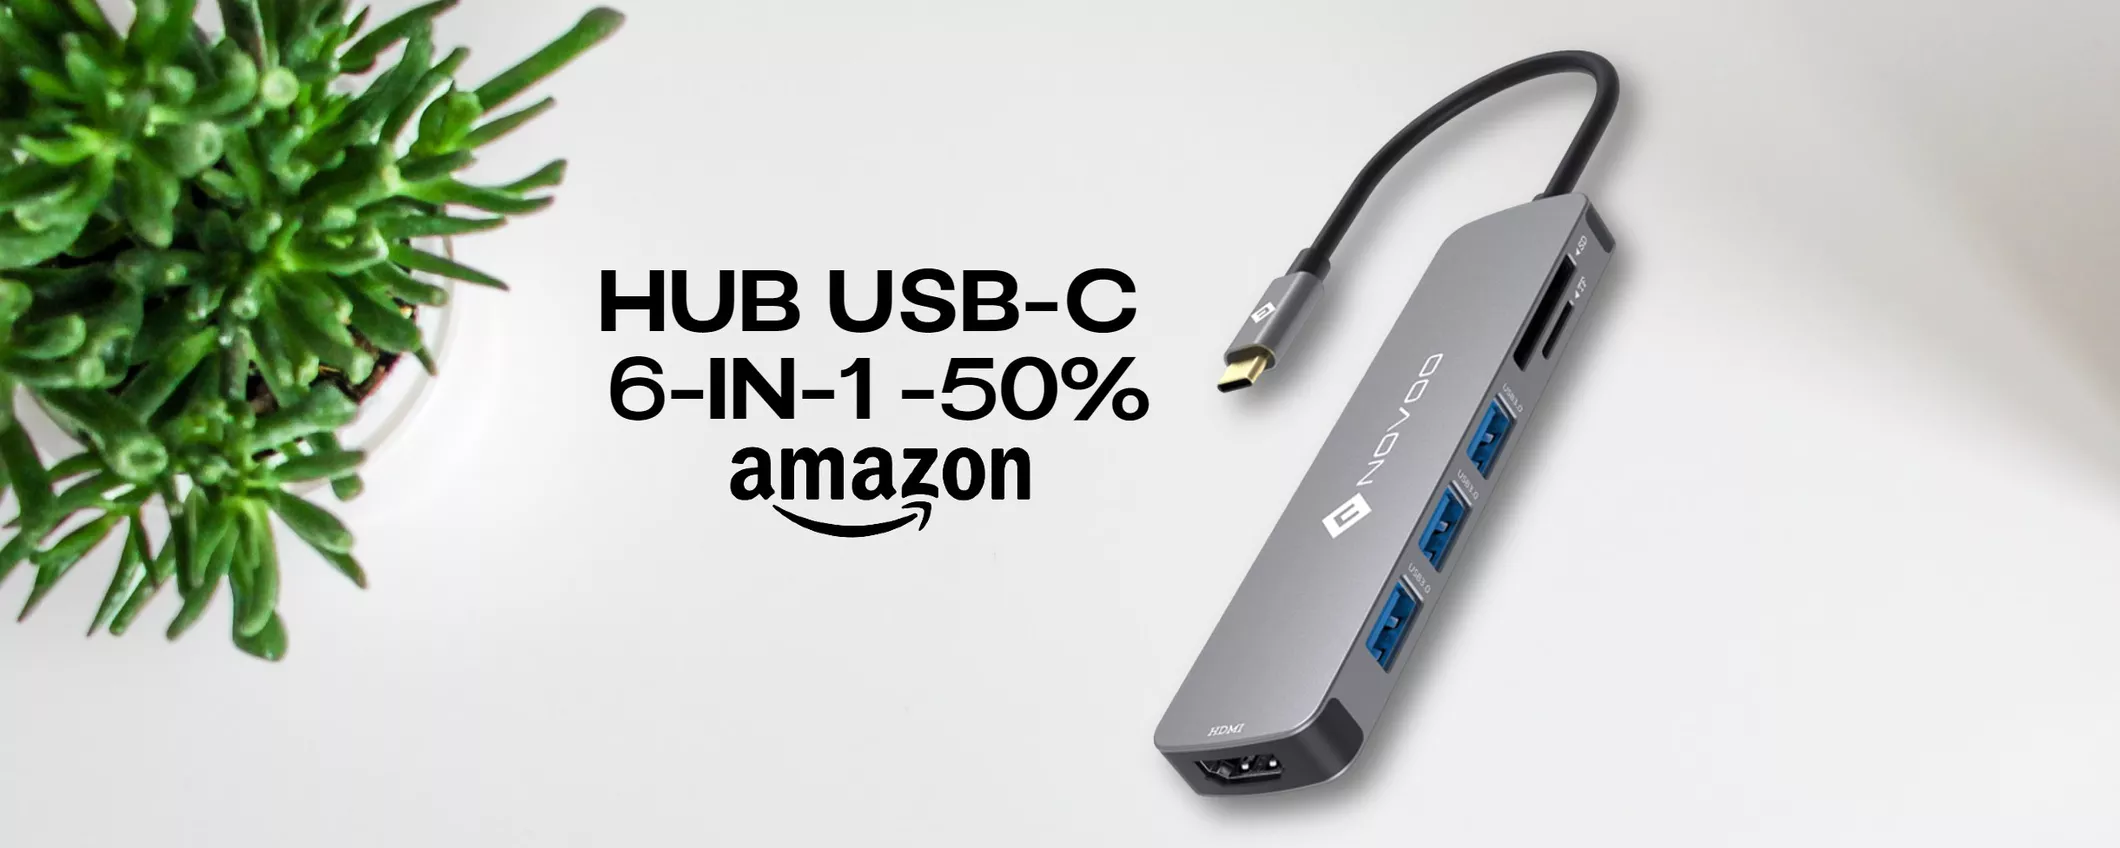 Hub USB-C 6-in-1 a metà prezzo su Amazon: AFFARE